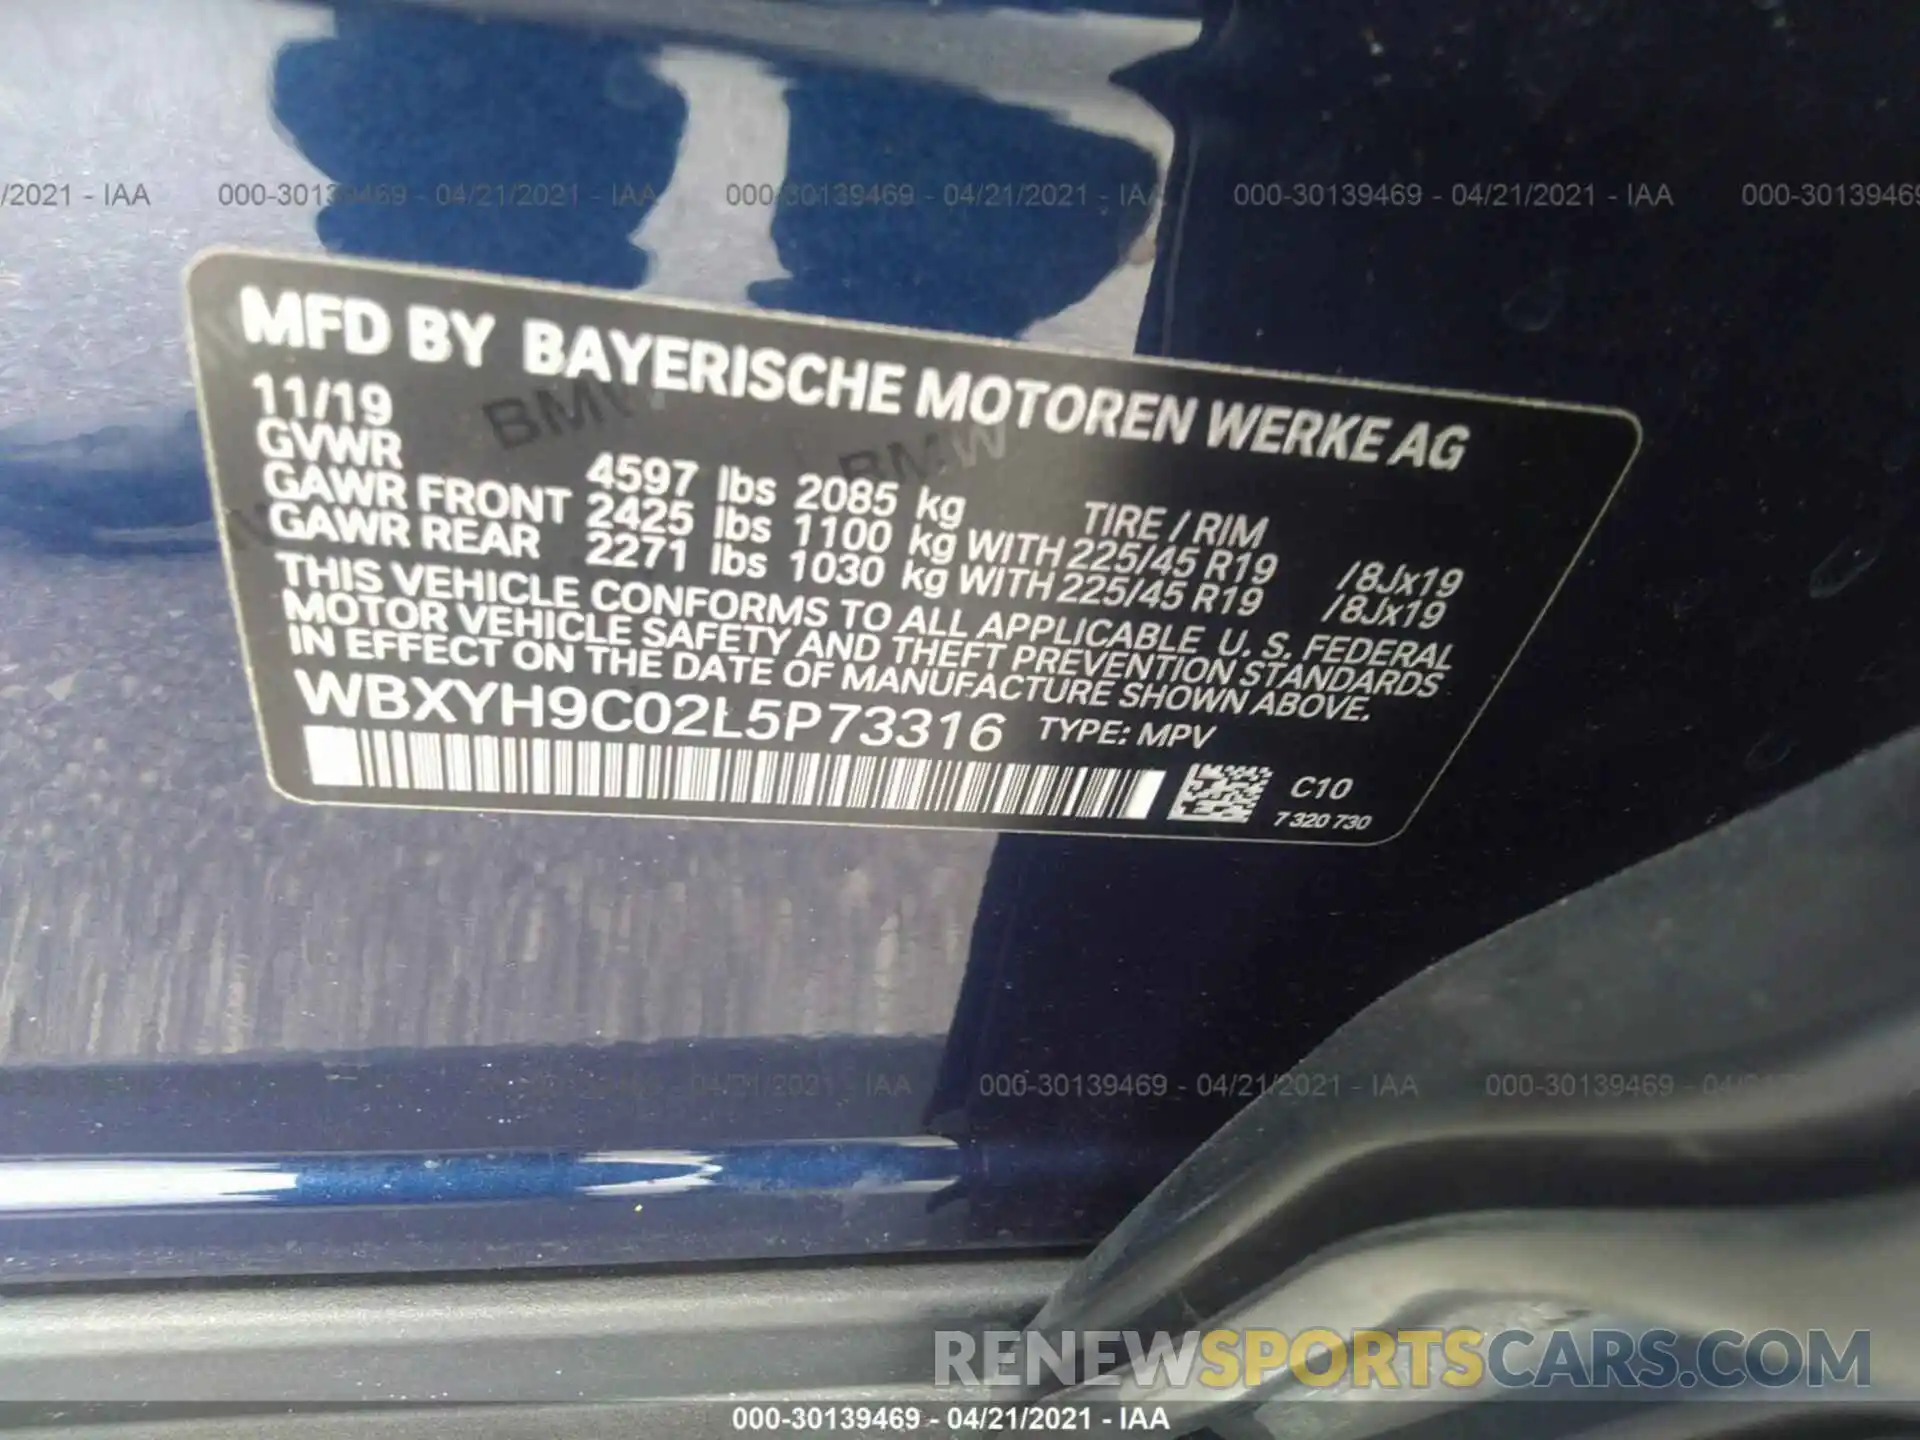 9 Photograph of a damaged car WBXYH9C02L5P73316 BMW X2 2020